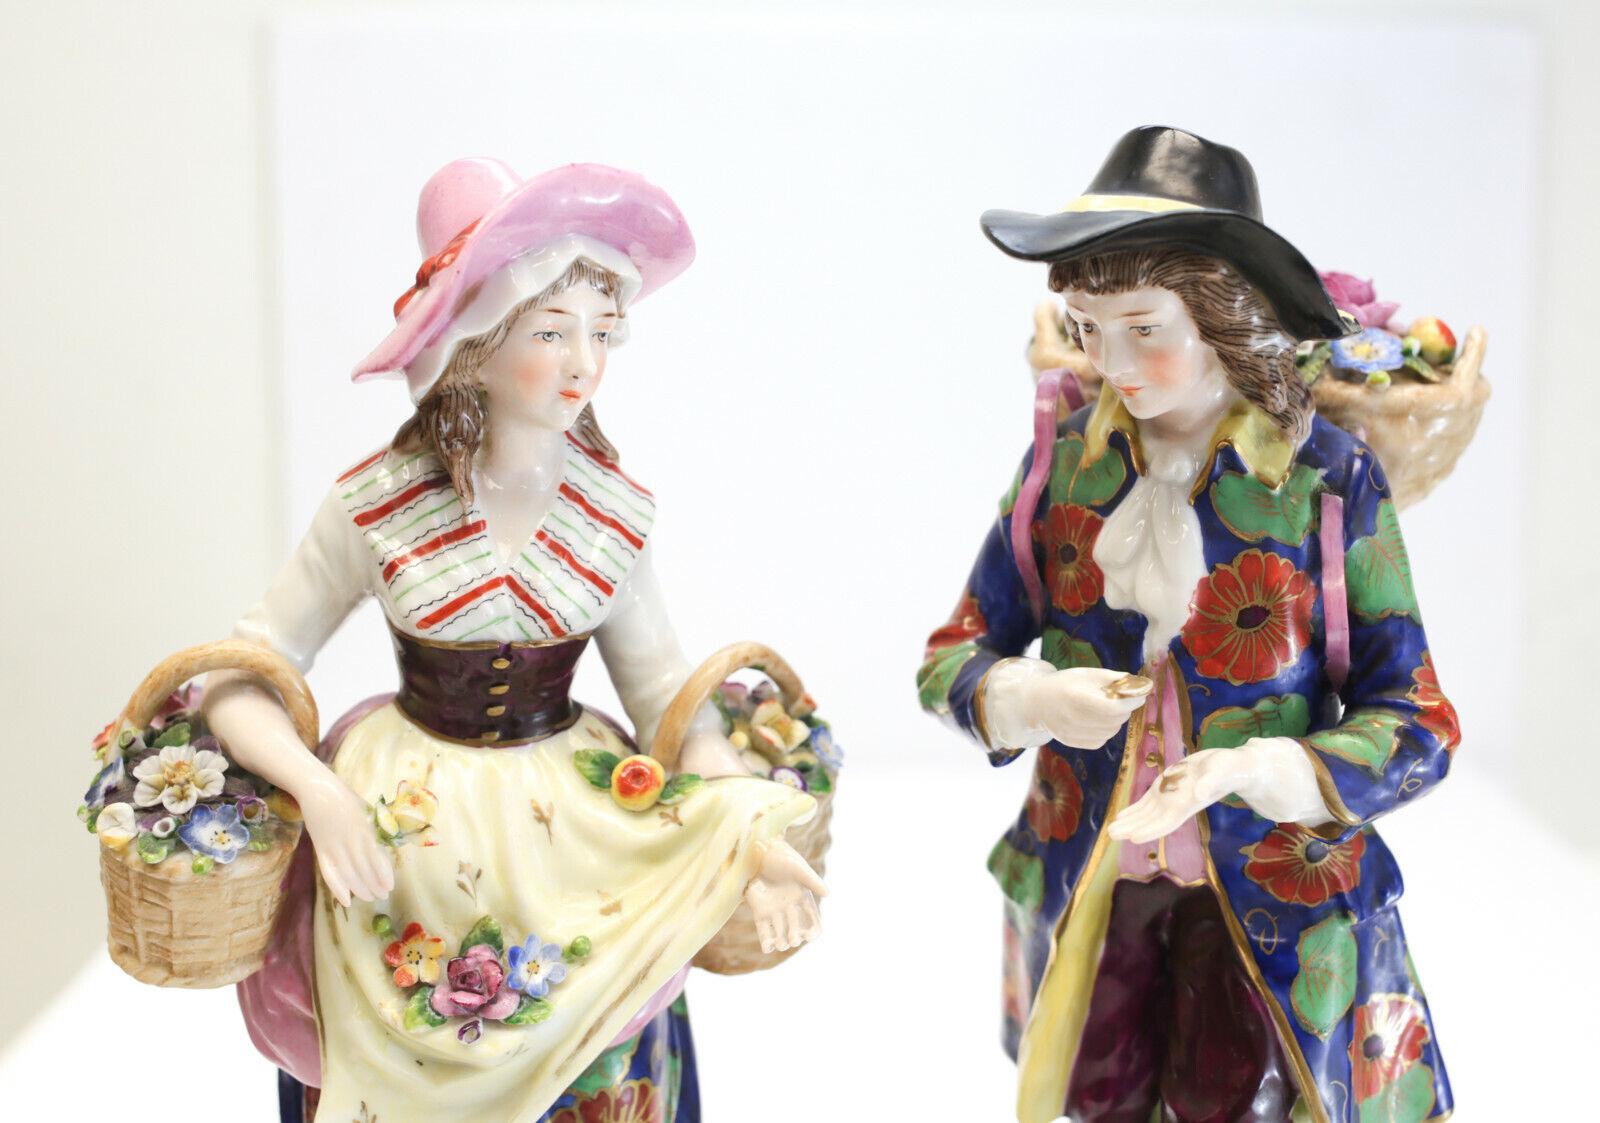 Charmante paire de figurines en porcelaine de Derby, corbeilles à fleurs, circa 1760

Un beau couple peint à la main cueillant des fleurs ; tous deux vêtus de vêtements d'époque du 18e siècle avec des motifs floraux éclatants et des garnitures